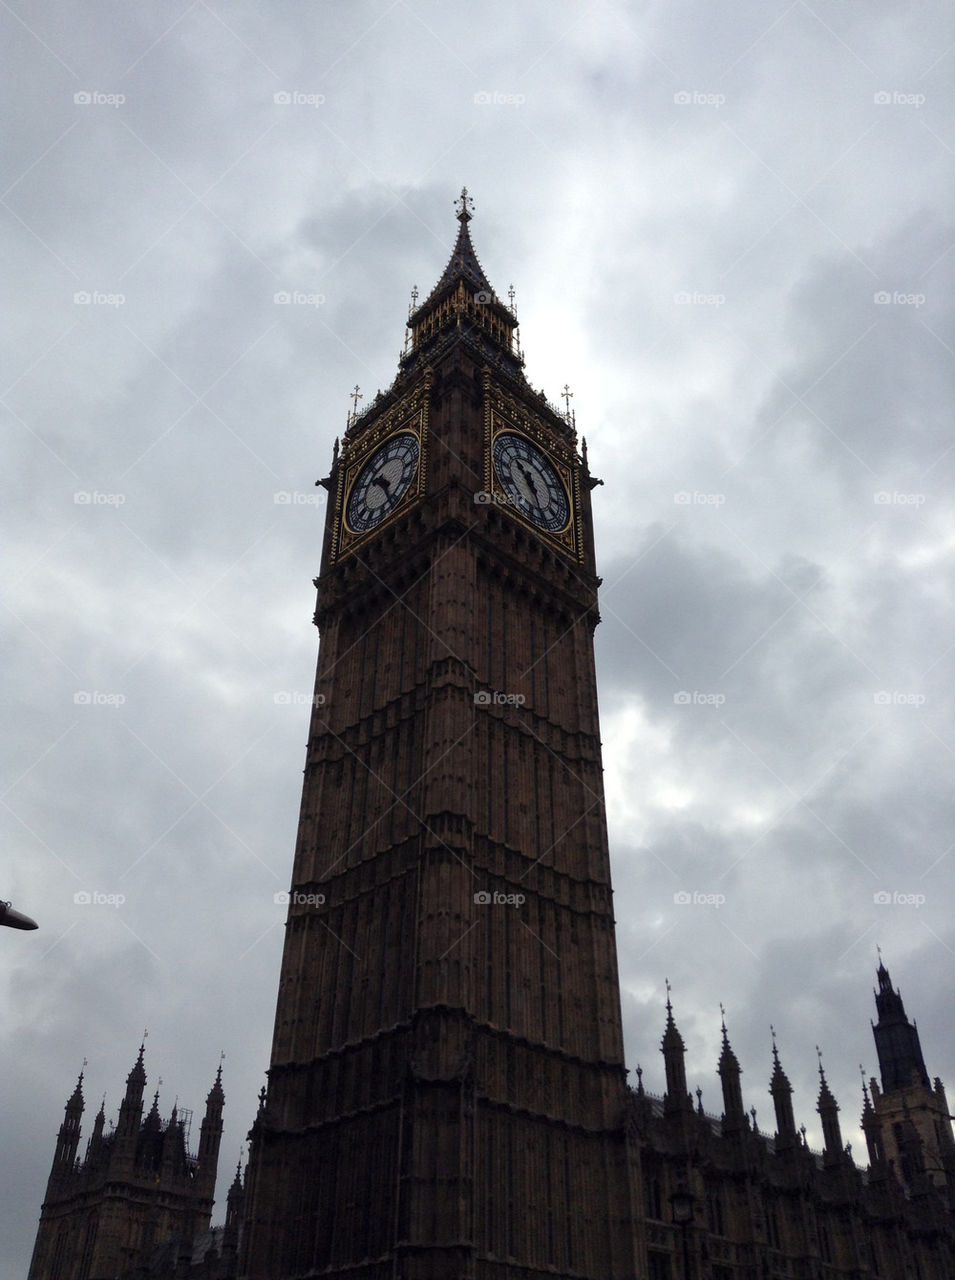 Big Ben in London 2013